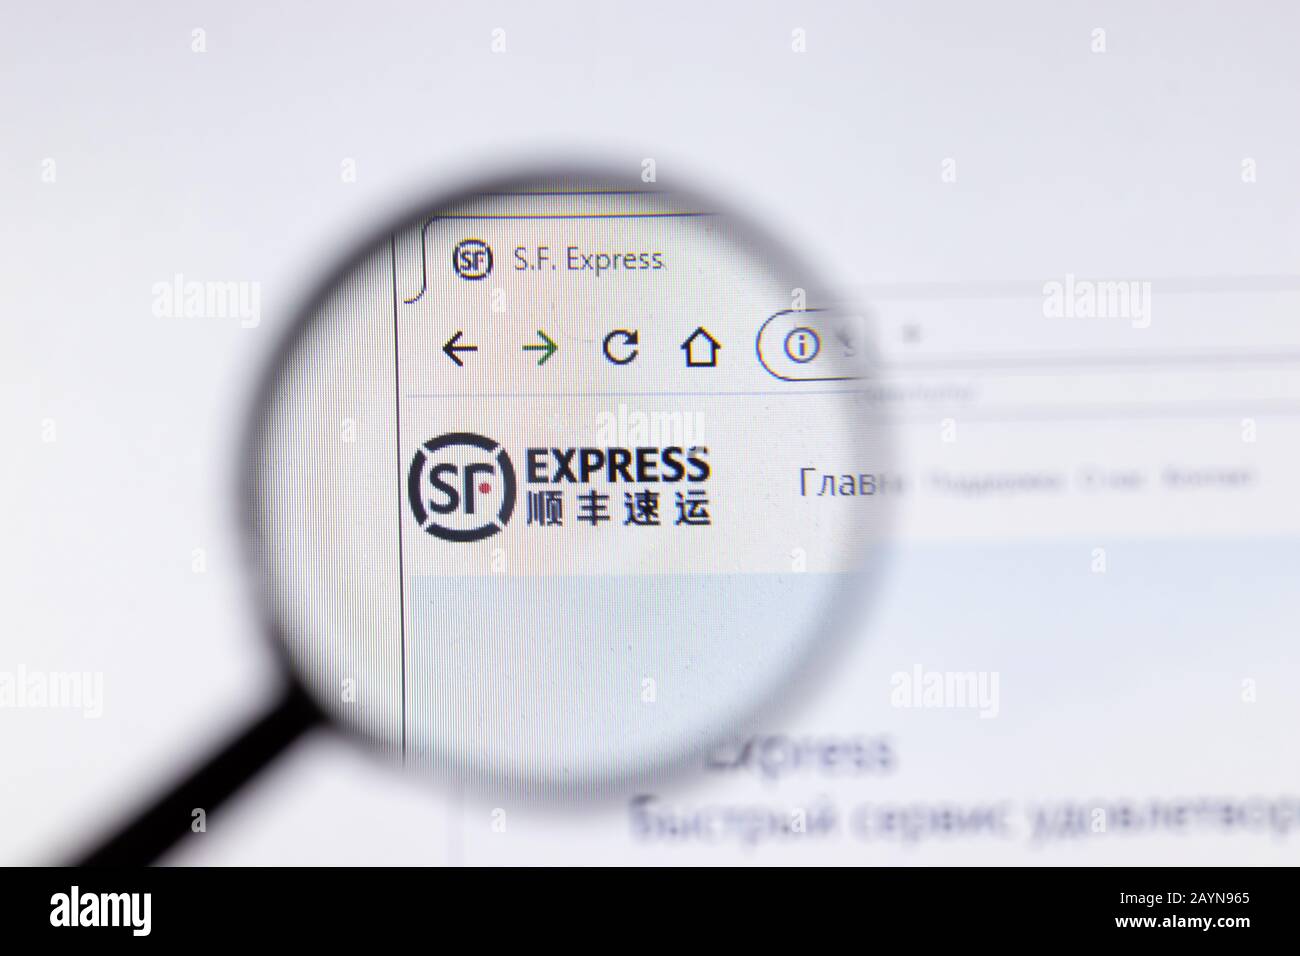 Petersburg, Russland - 18. Februar 2020: Logo auf der Website der Firma SF Express auf dem Laptop-Display. Bildschirm mit Symbol, Bildmaterial Stockfoto